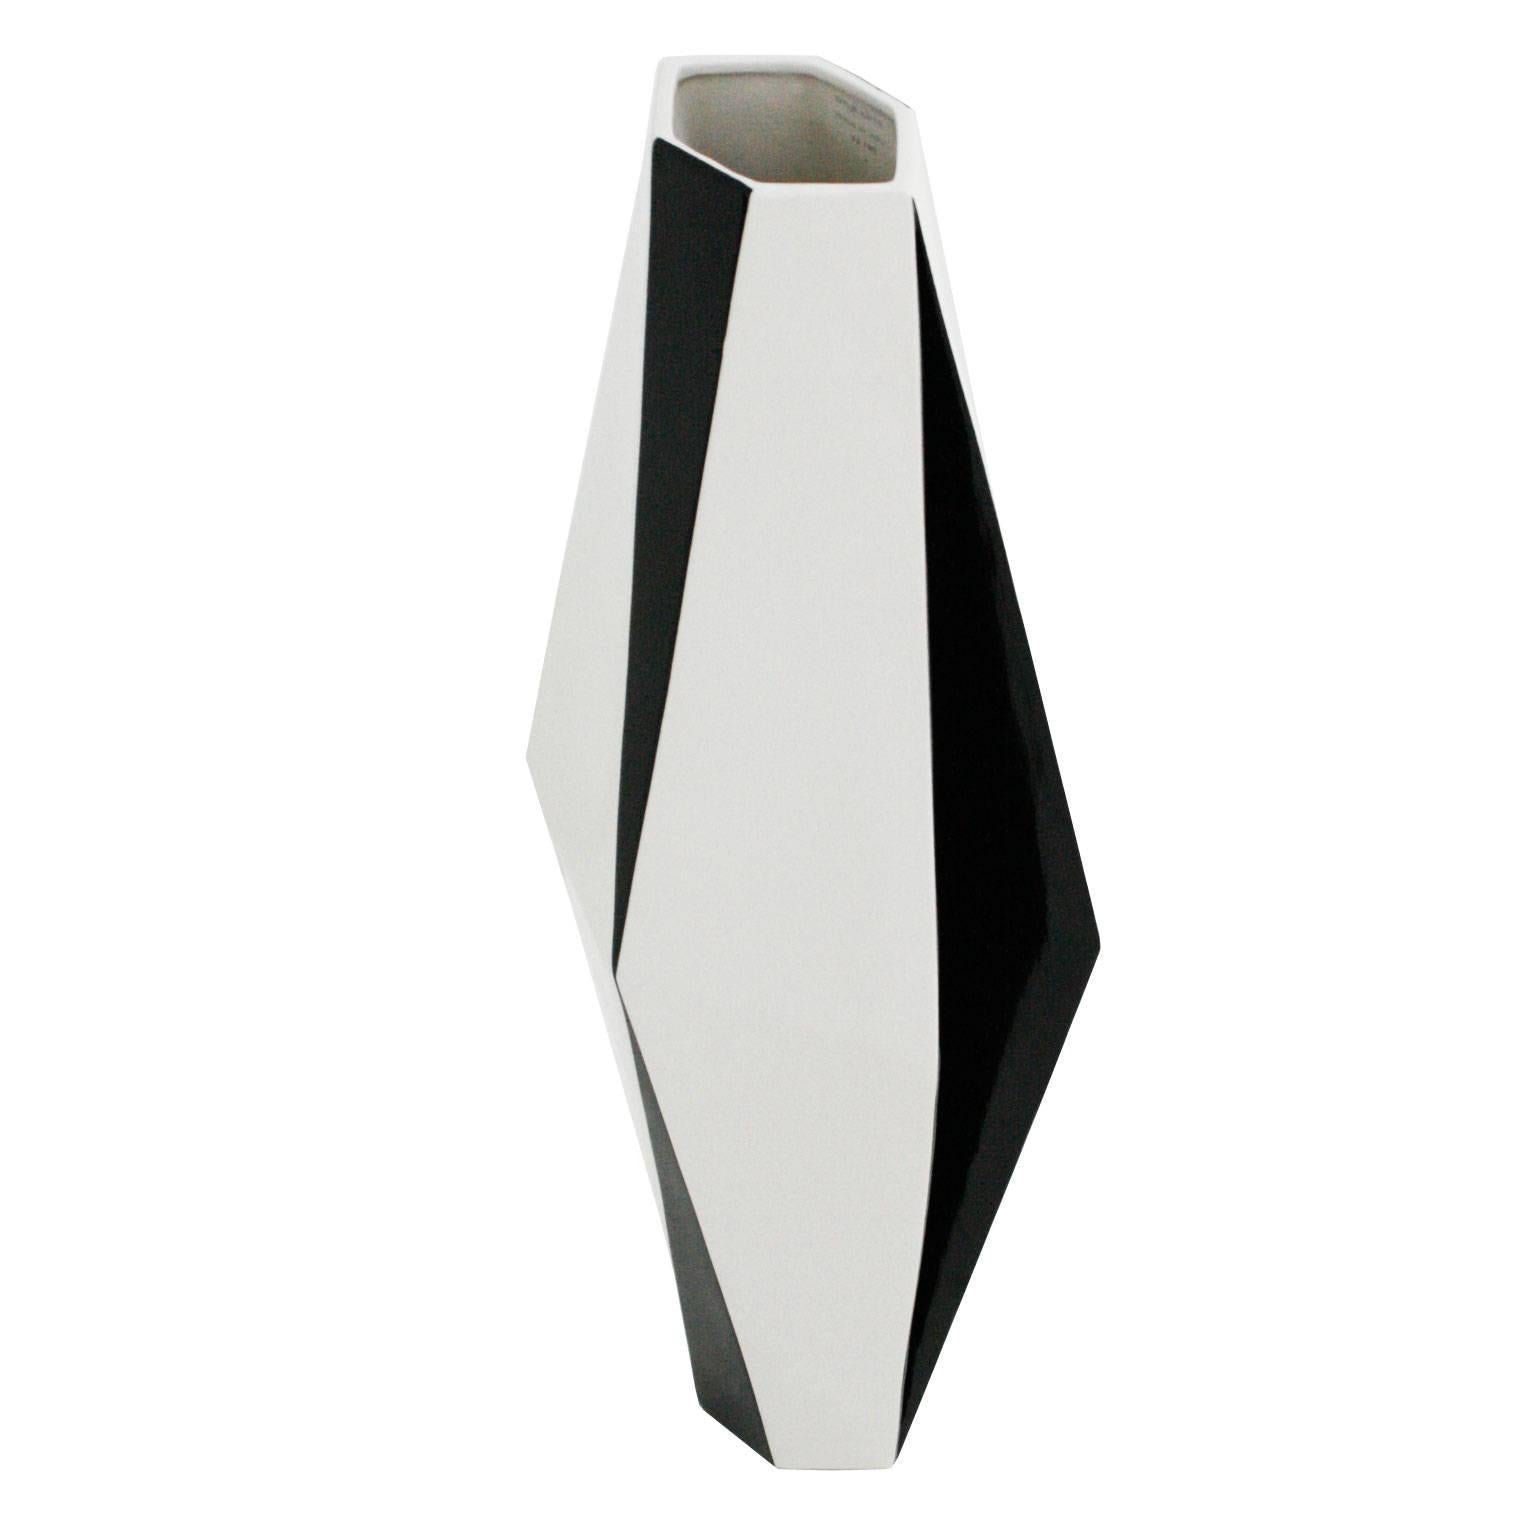 Ceramic Pair of Vases Designed by Dontatella Pigato